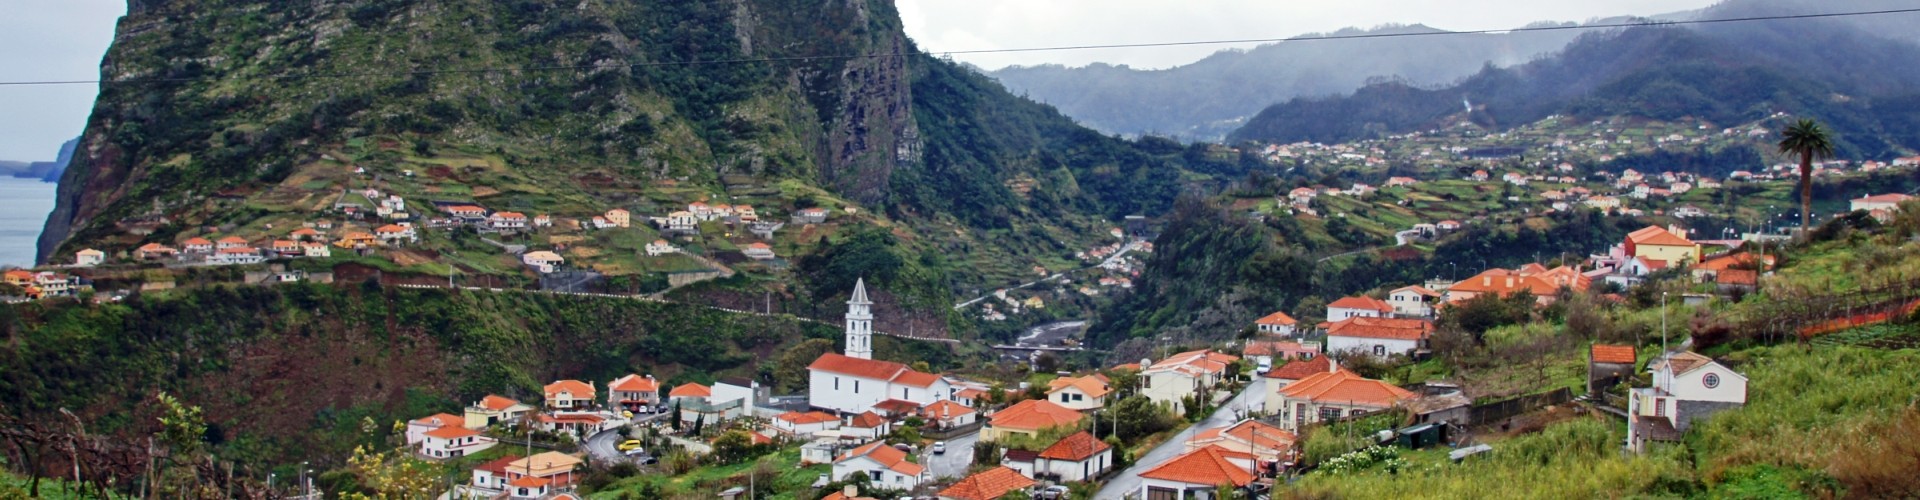 Faial Parish Church, Madeira